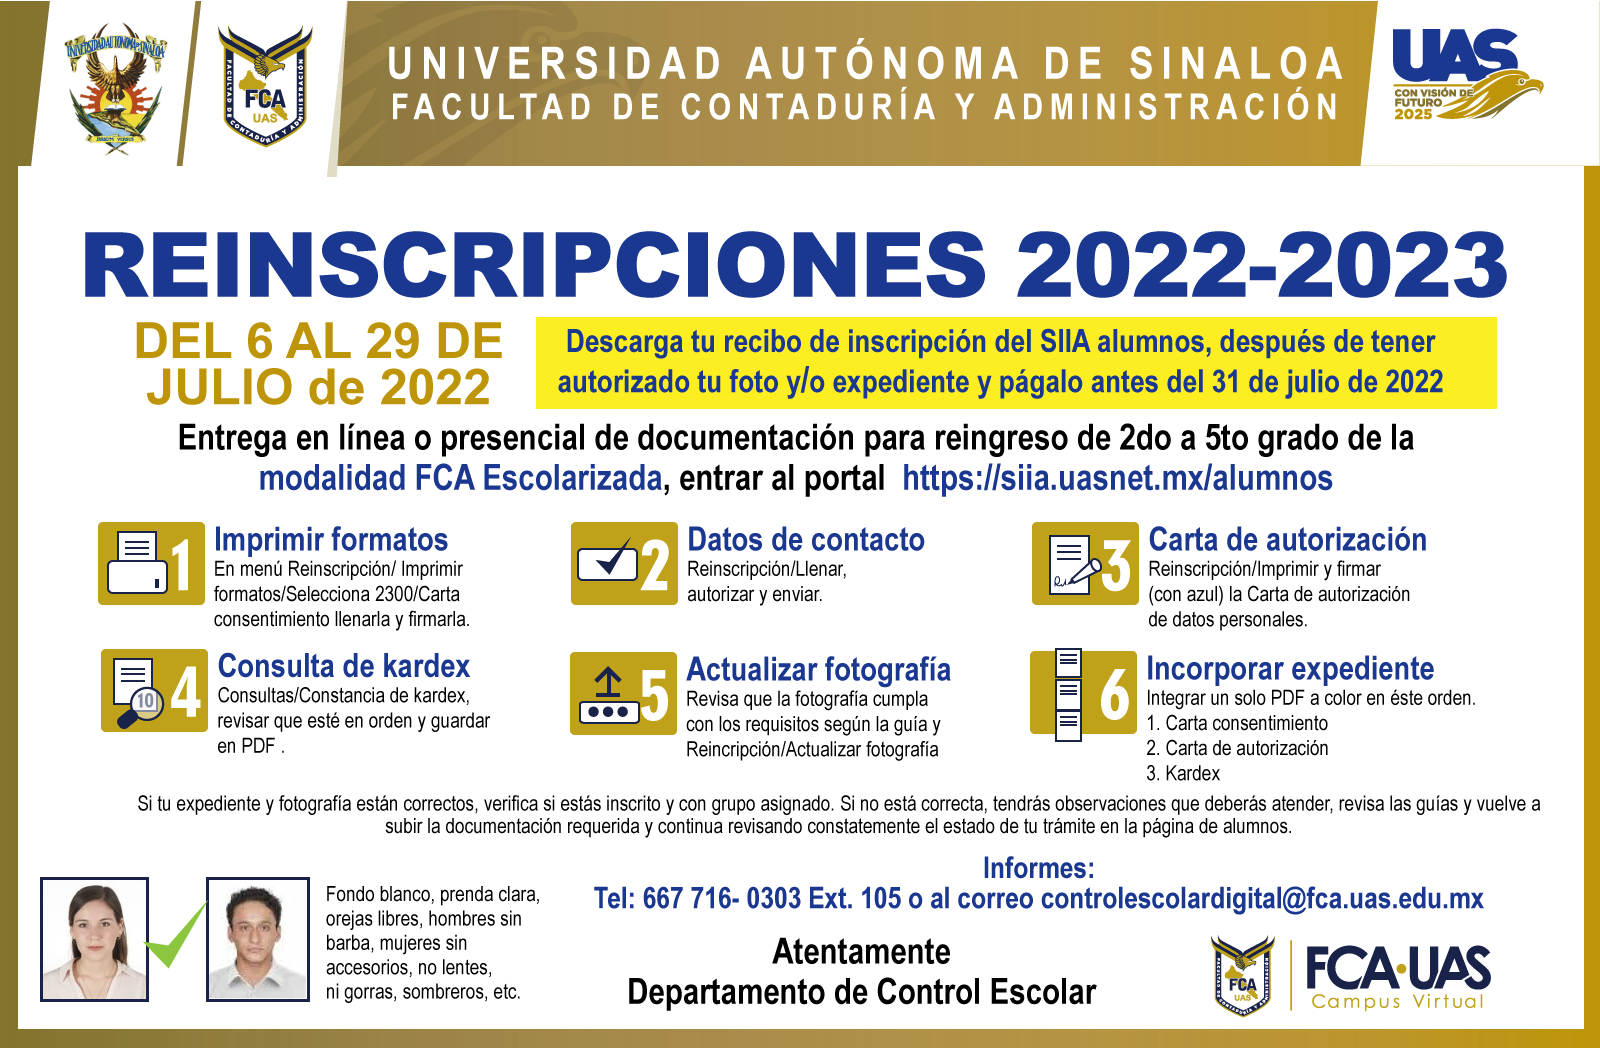 33-aviso-reinscripciones-2022-2023-2.png